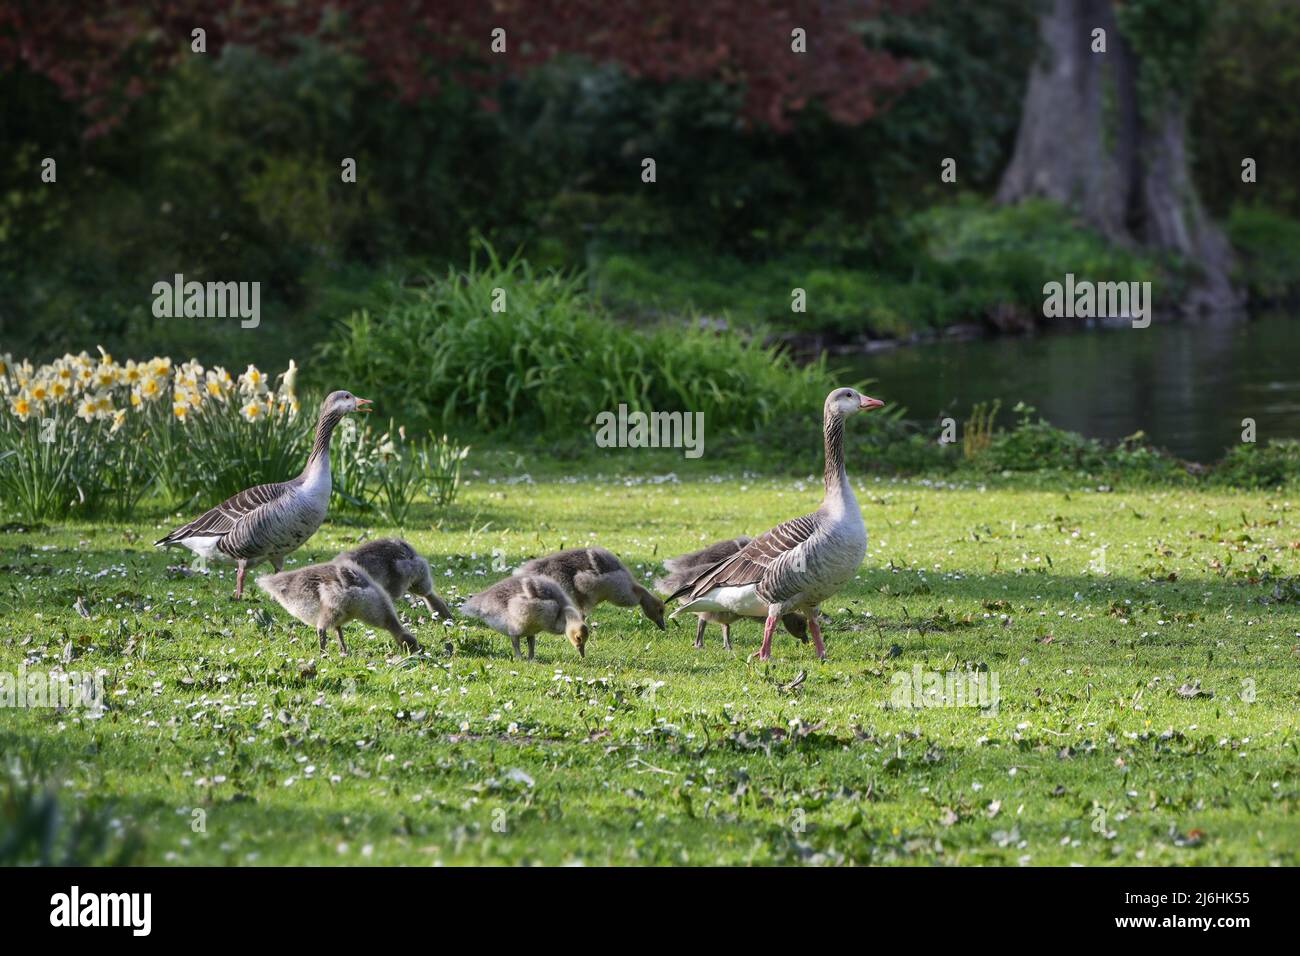 Famille des oies grises (Anser anser) avec des oiseaux parents et des oisons marchant dans le parc jusqu'à l'étang, espace de copie, foyer choisi, profondeur étroite de fi Banque D'Images